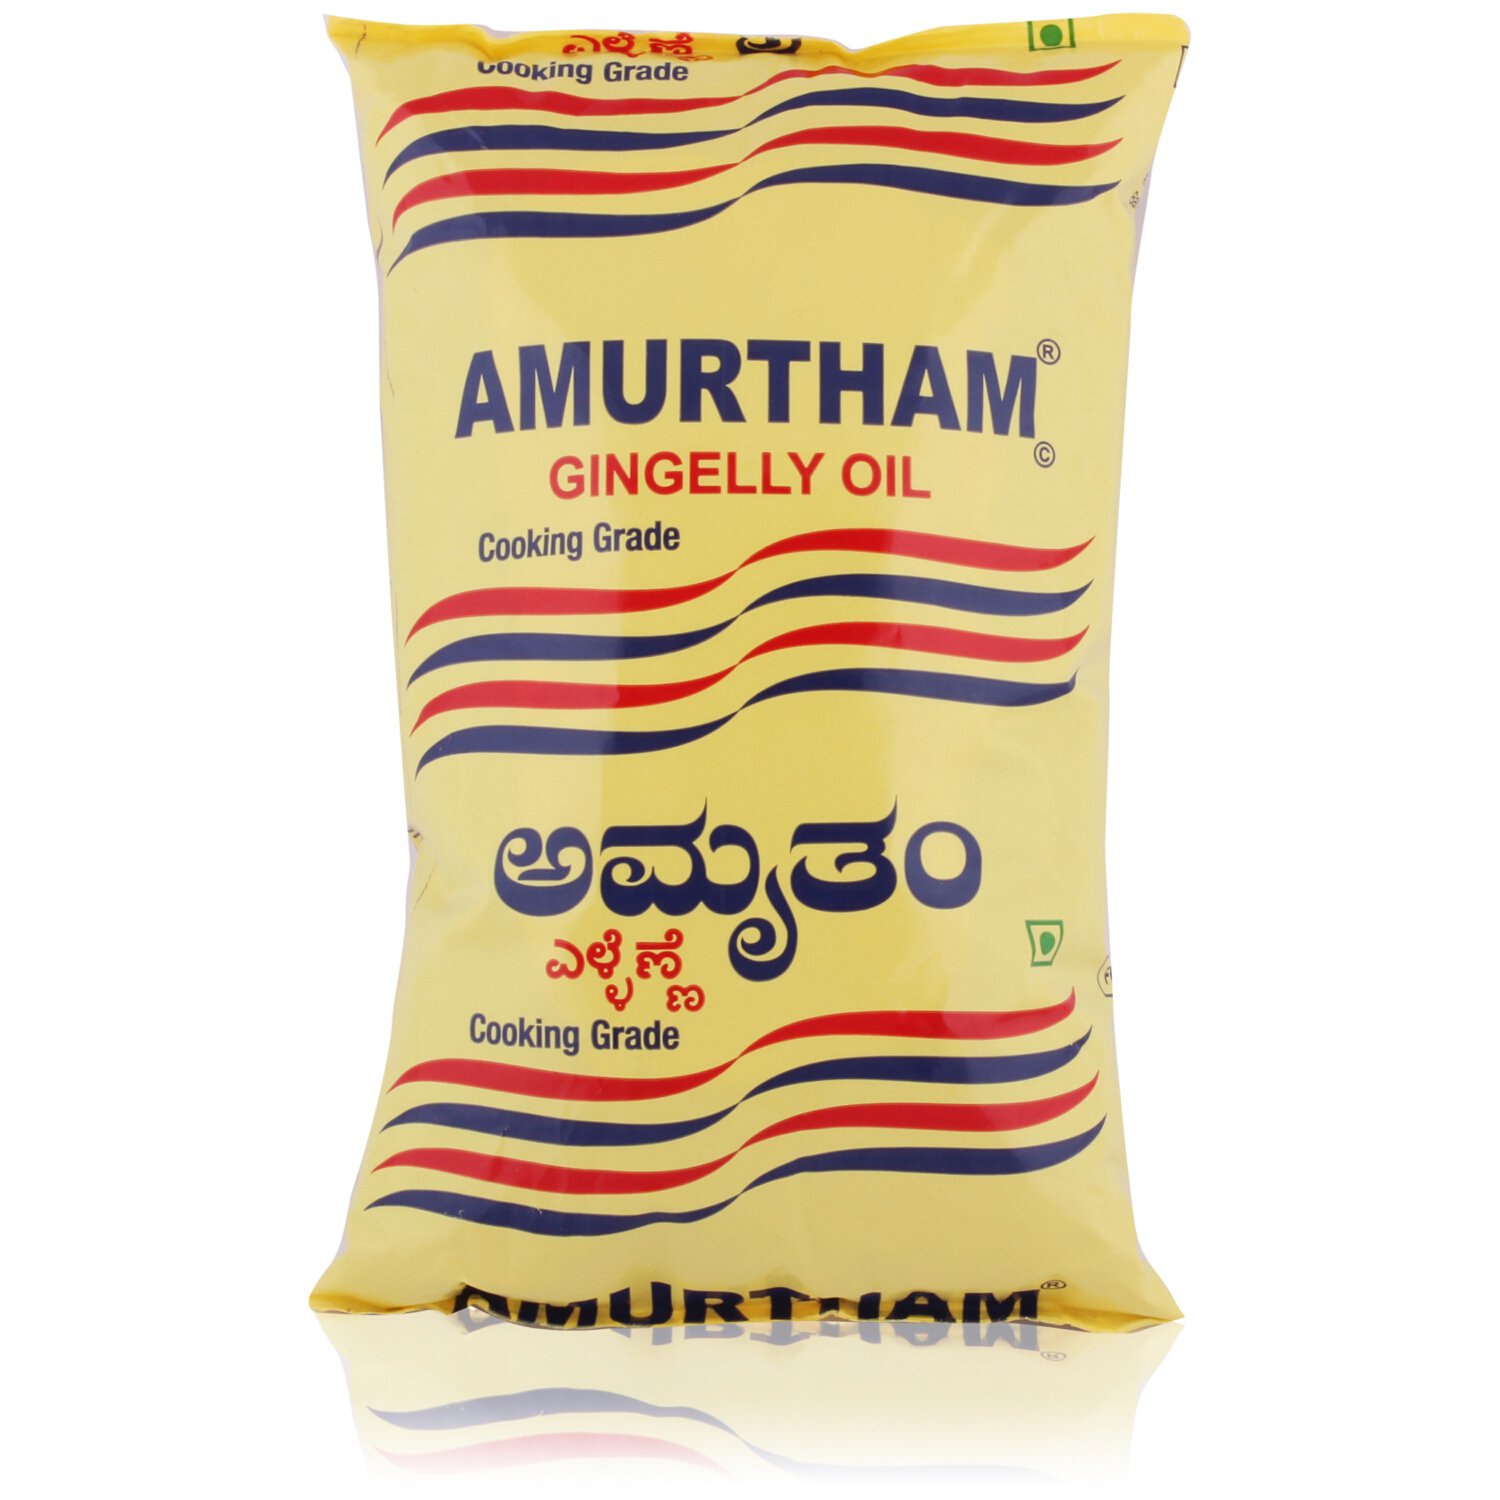 Amurtham Gingelly Oil